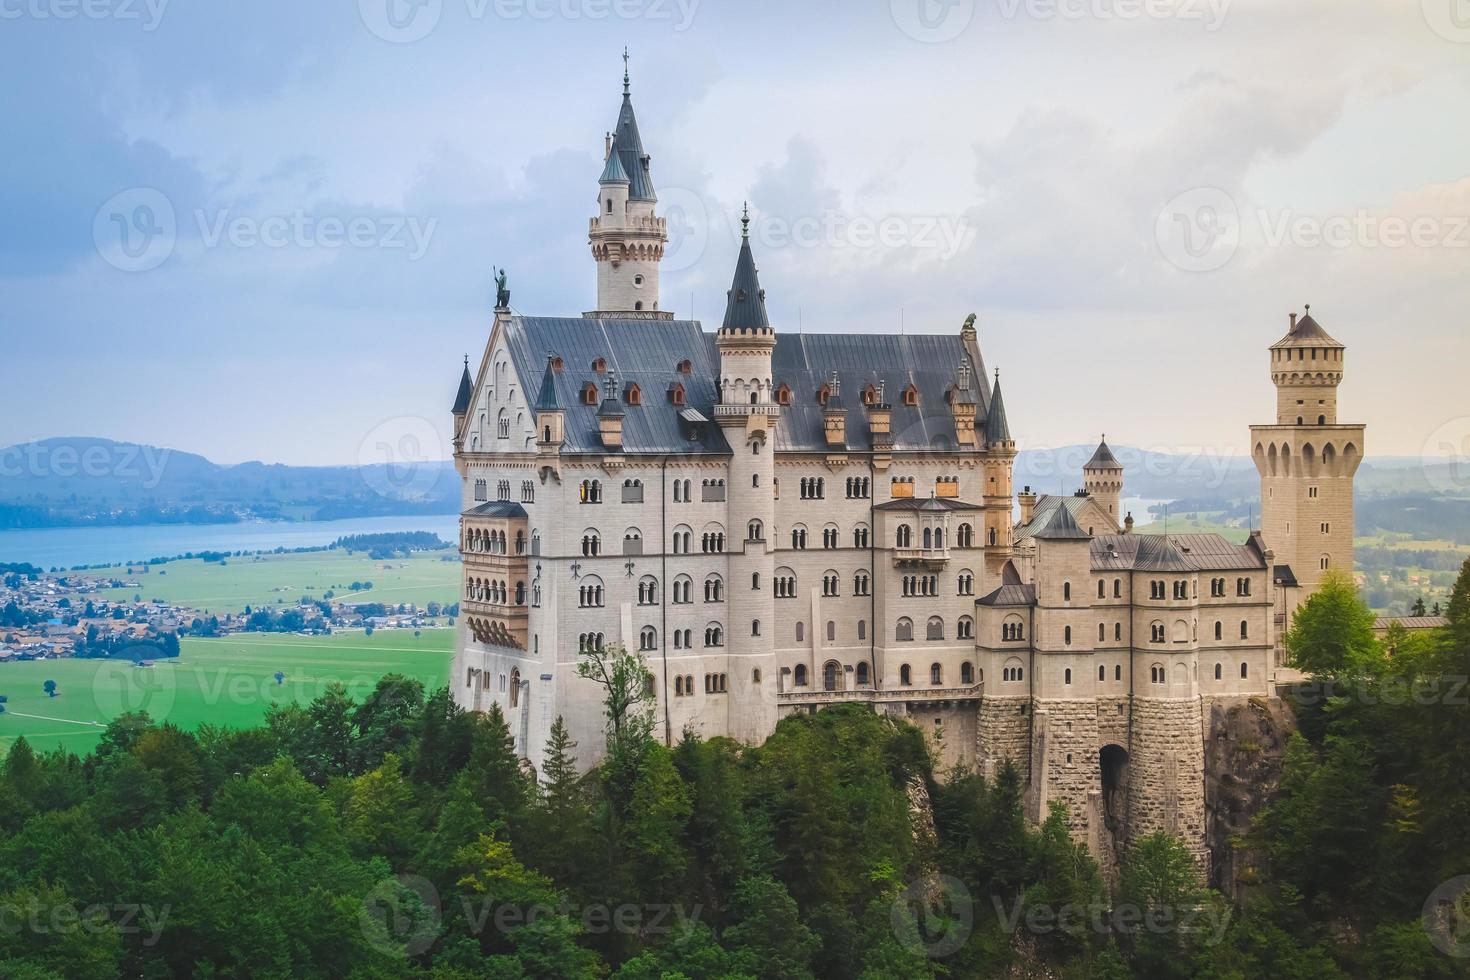 Castelo de Neuschwanstein na paisagem de verão perto de Munique na Baviera, Alemanha foto